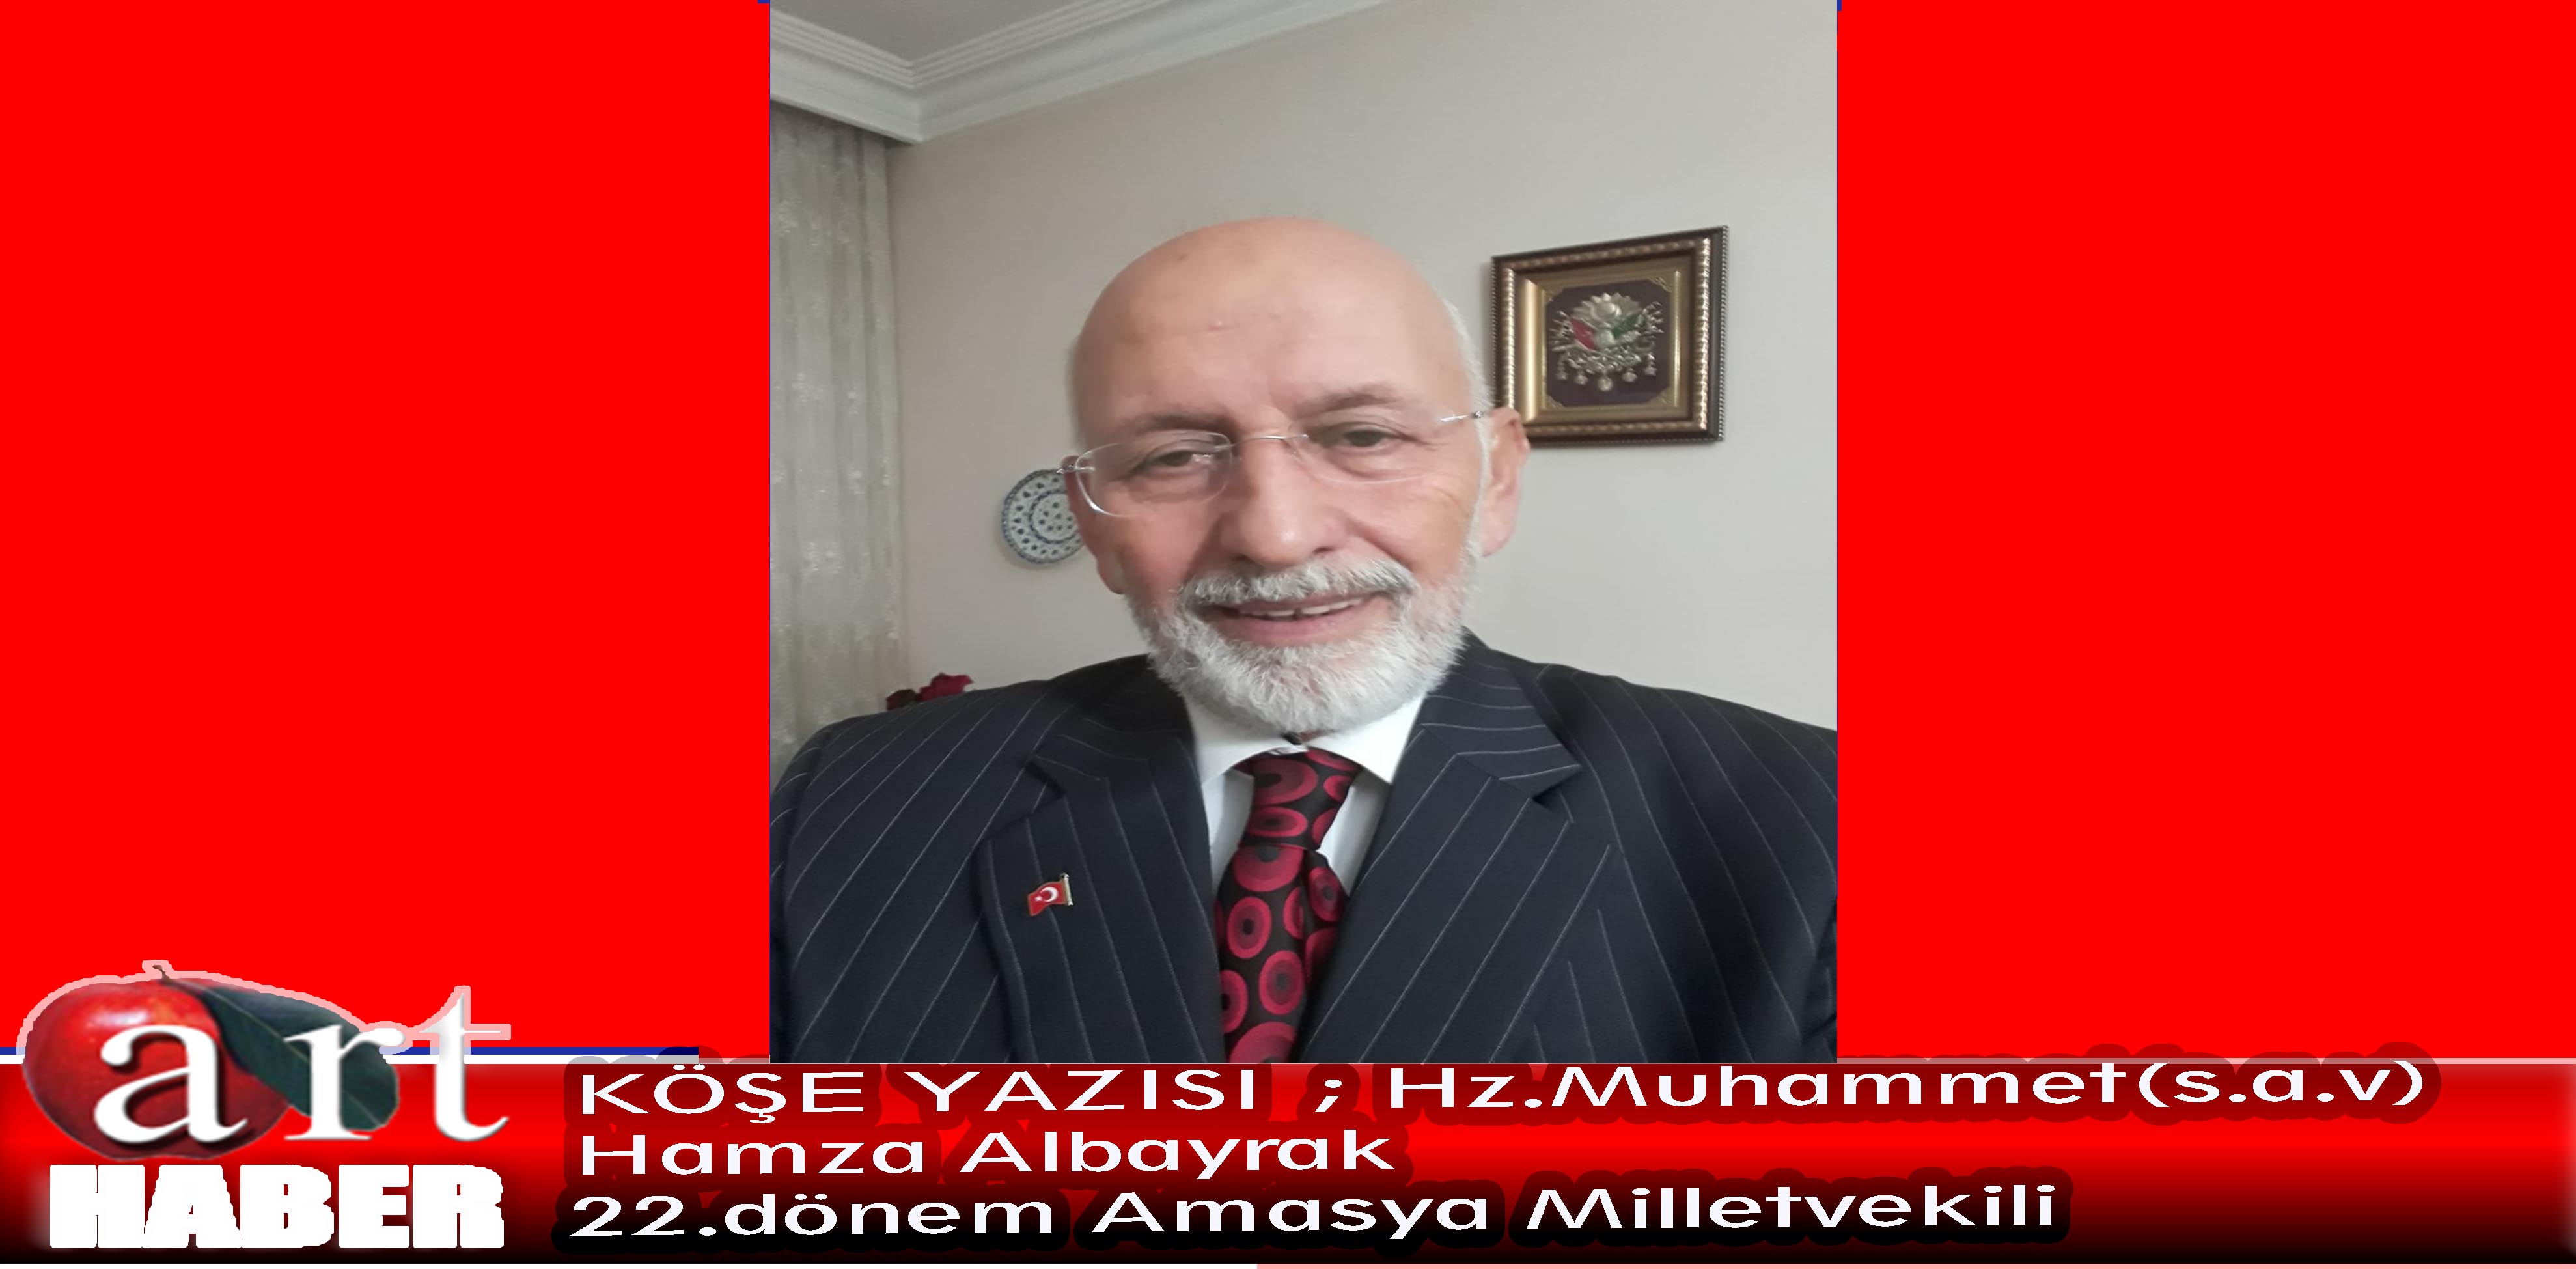 KÖŞE YAZISI Hamza Albayrak  22.dönem Amasya Milletvekili